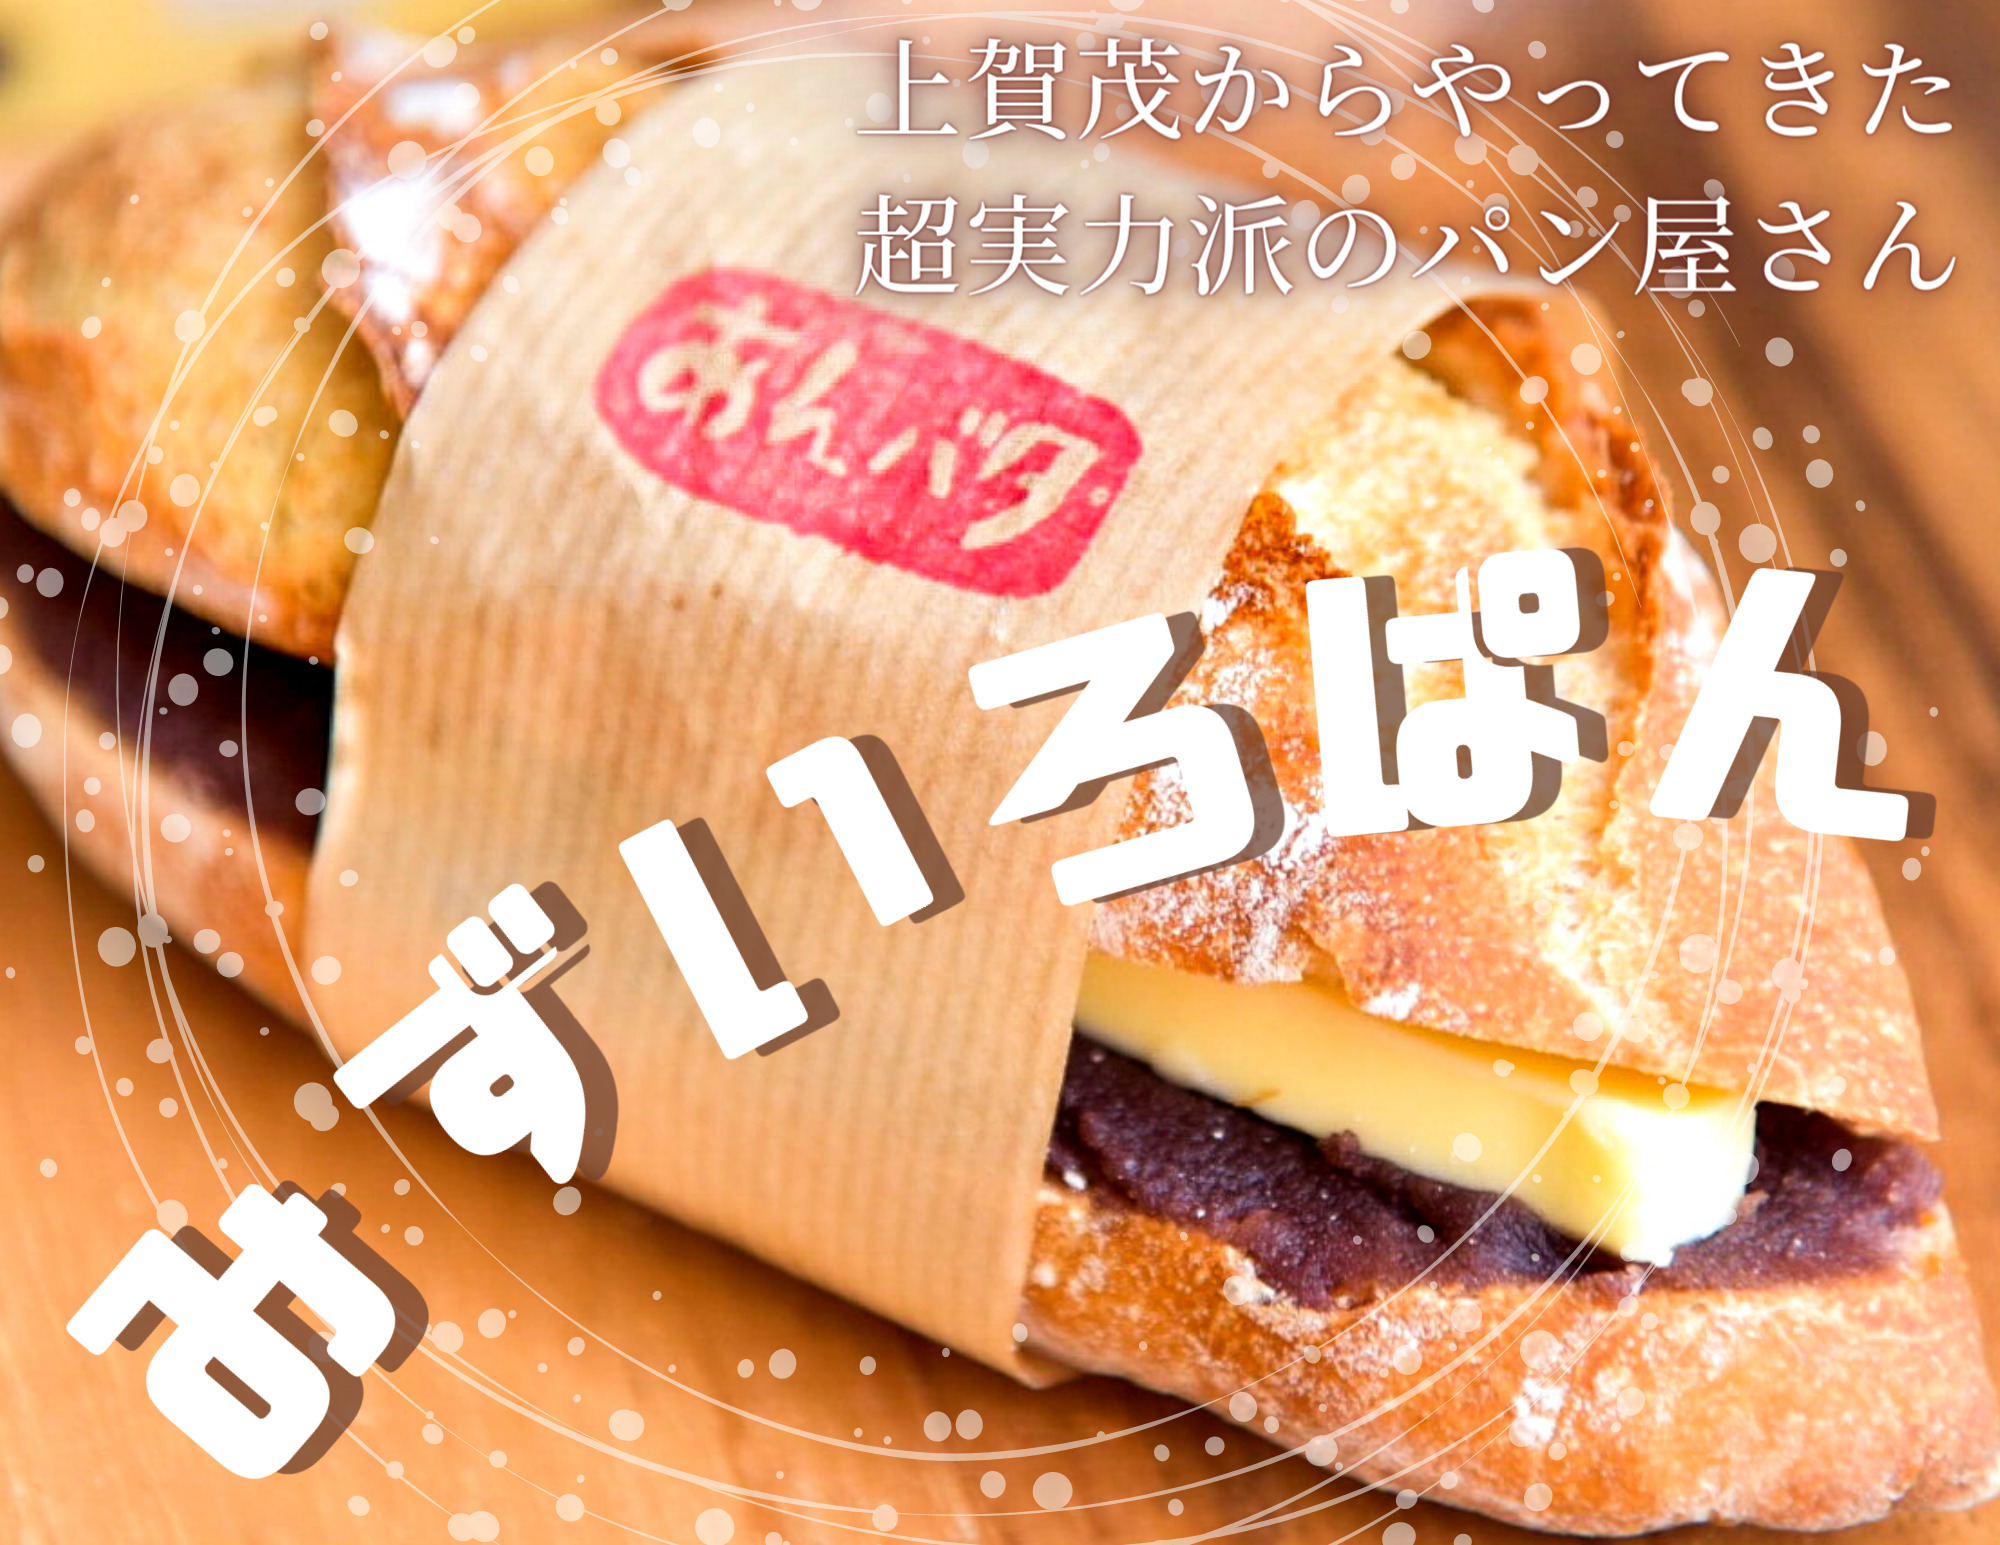 みずいろぱん あんバターパンが人気 京都北山からやってきた美味しいパン屋さん 福知山市 奥京都ぱんだ